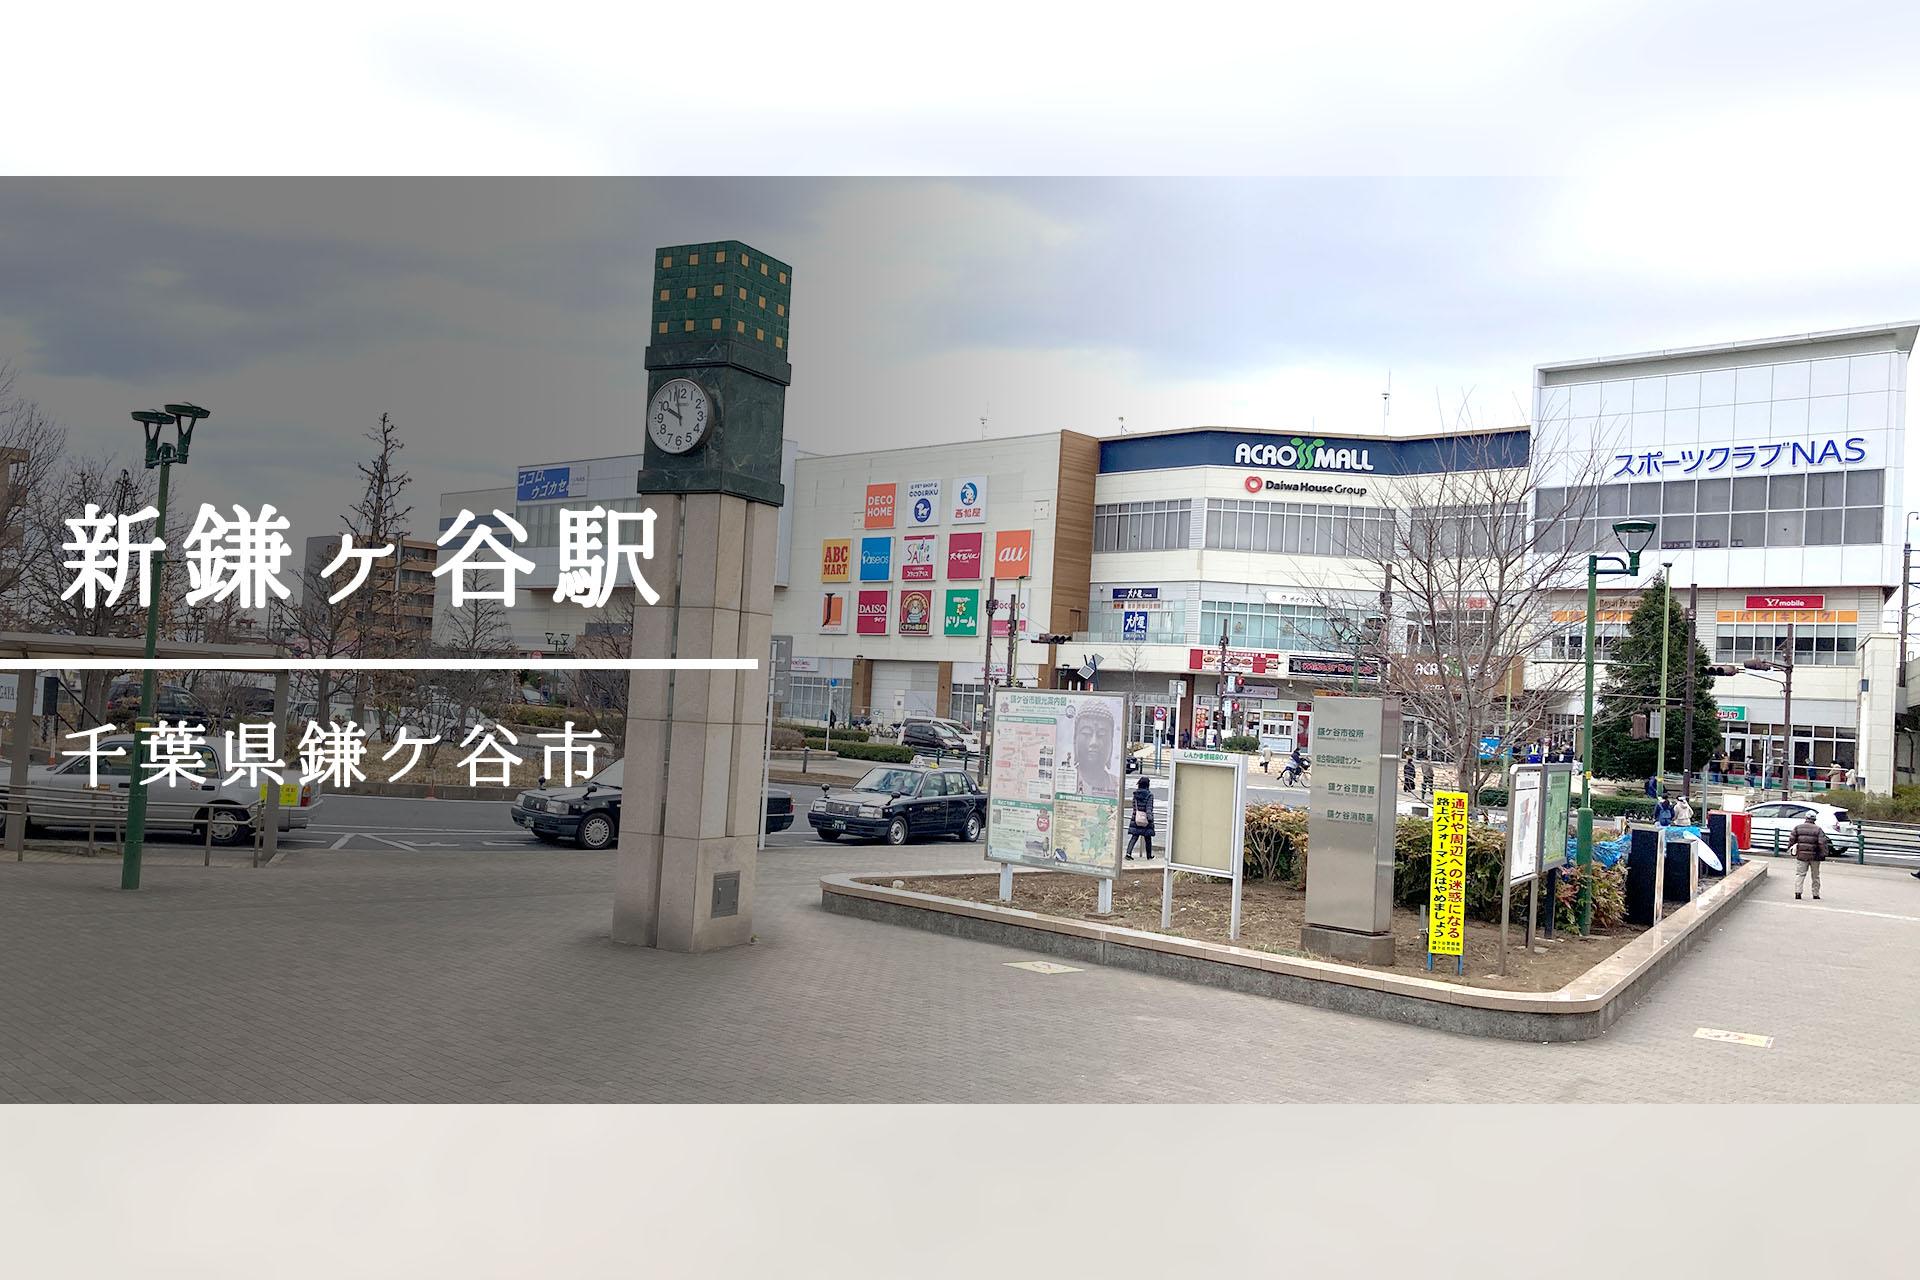 新鎌ヶ谷駅周辺 ―こんなはずじゃ・・・ここは奇跡が詰まった街だった！？―